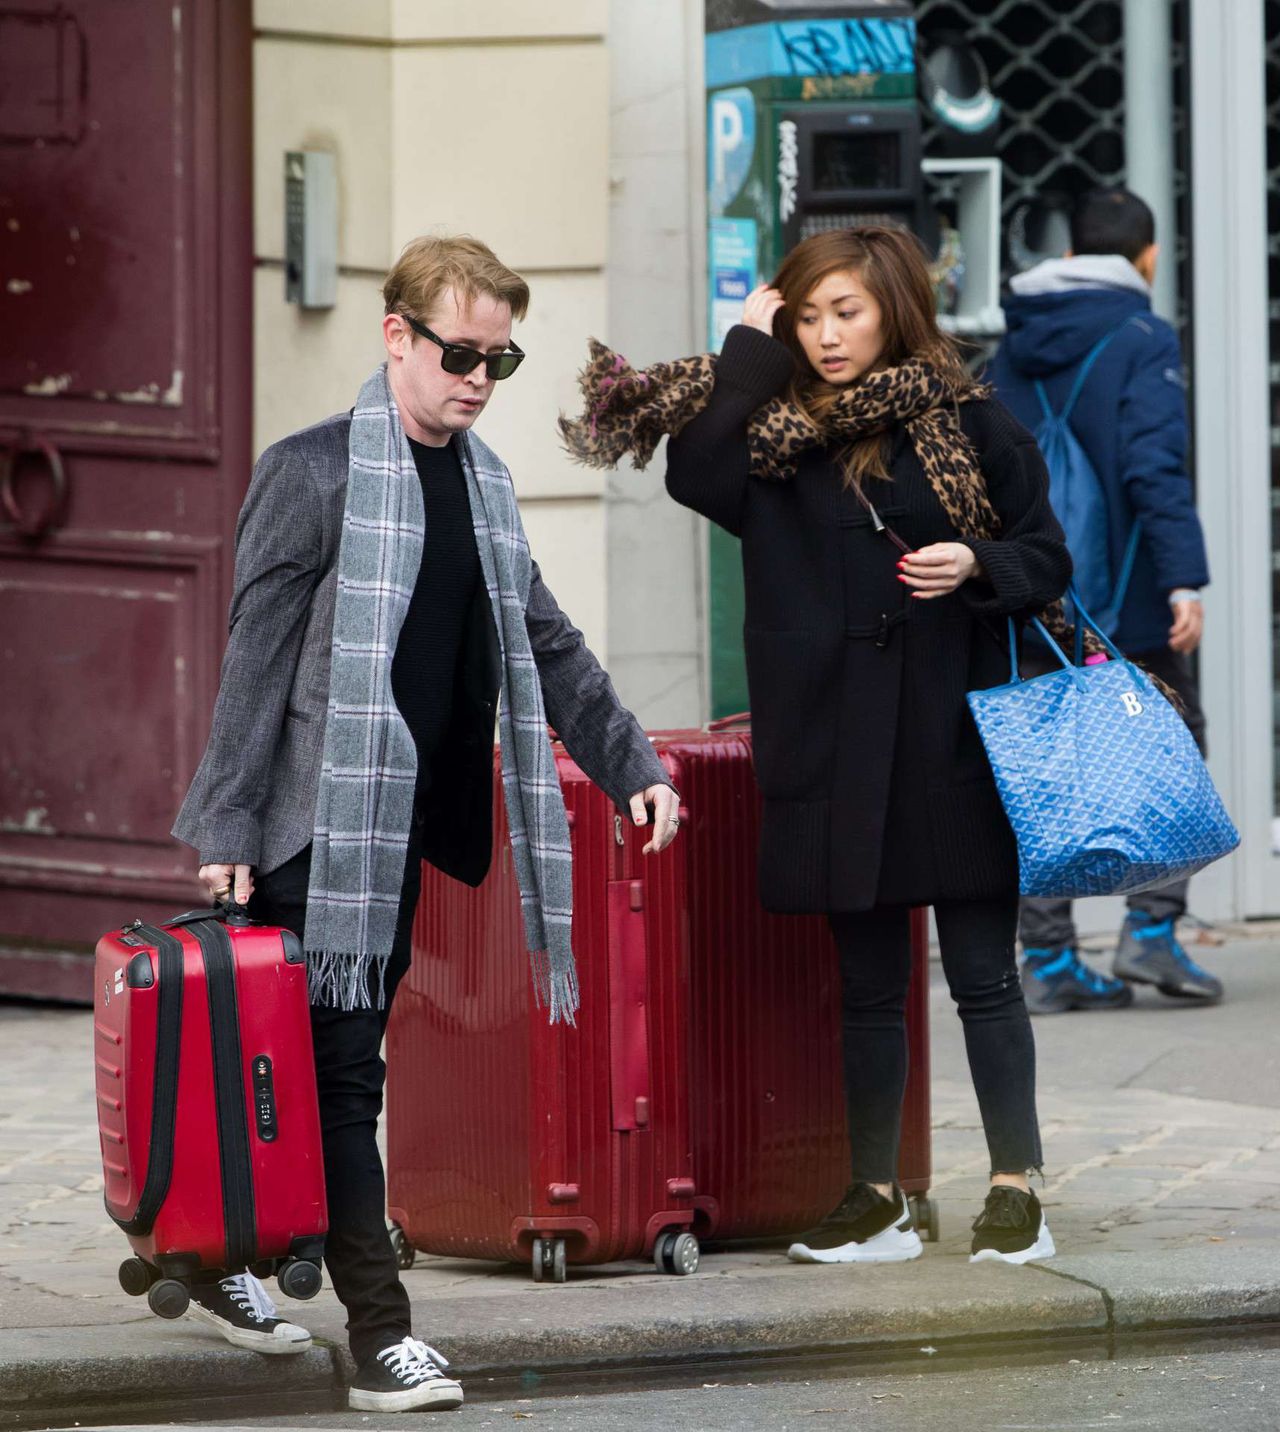 Macaulay Culkin i jego dziewczyna Brenda Song w Paryżu